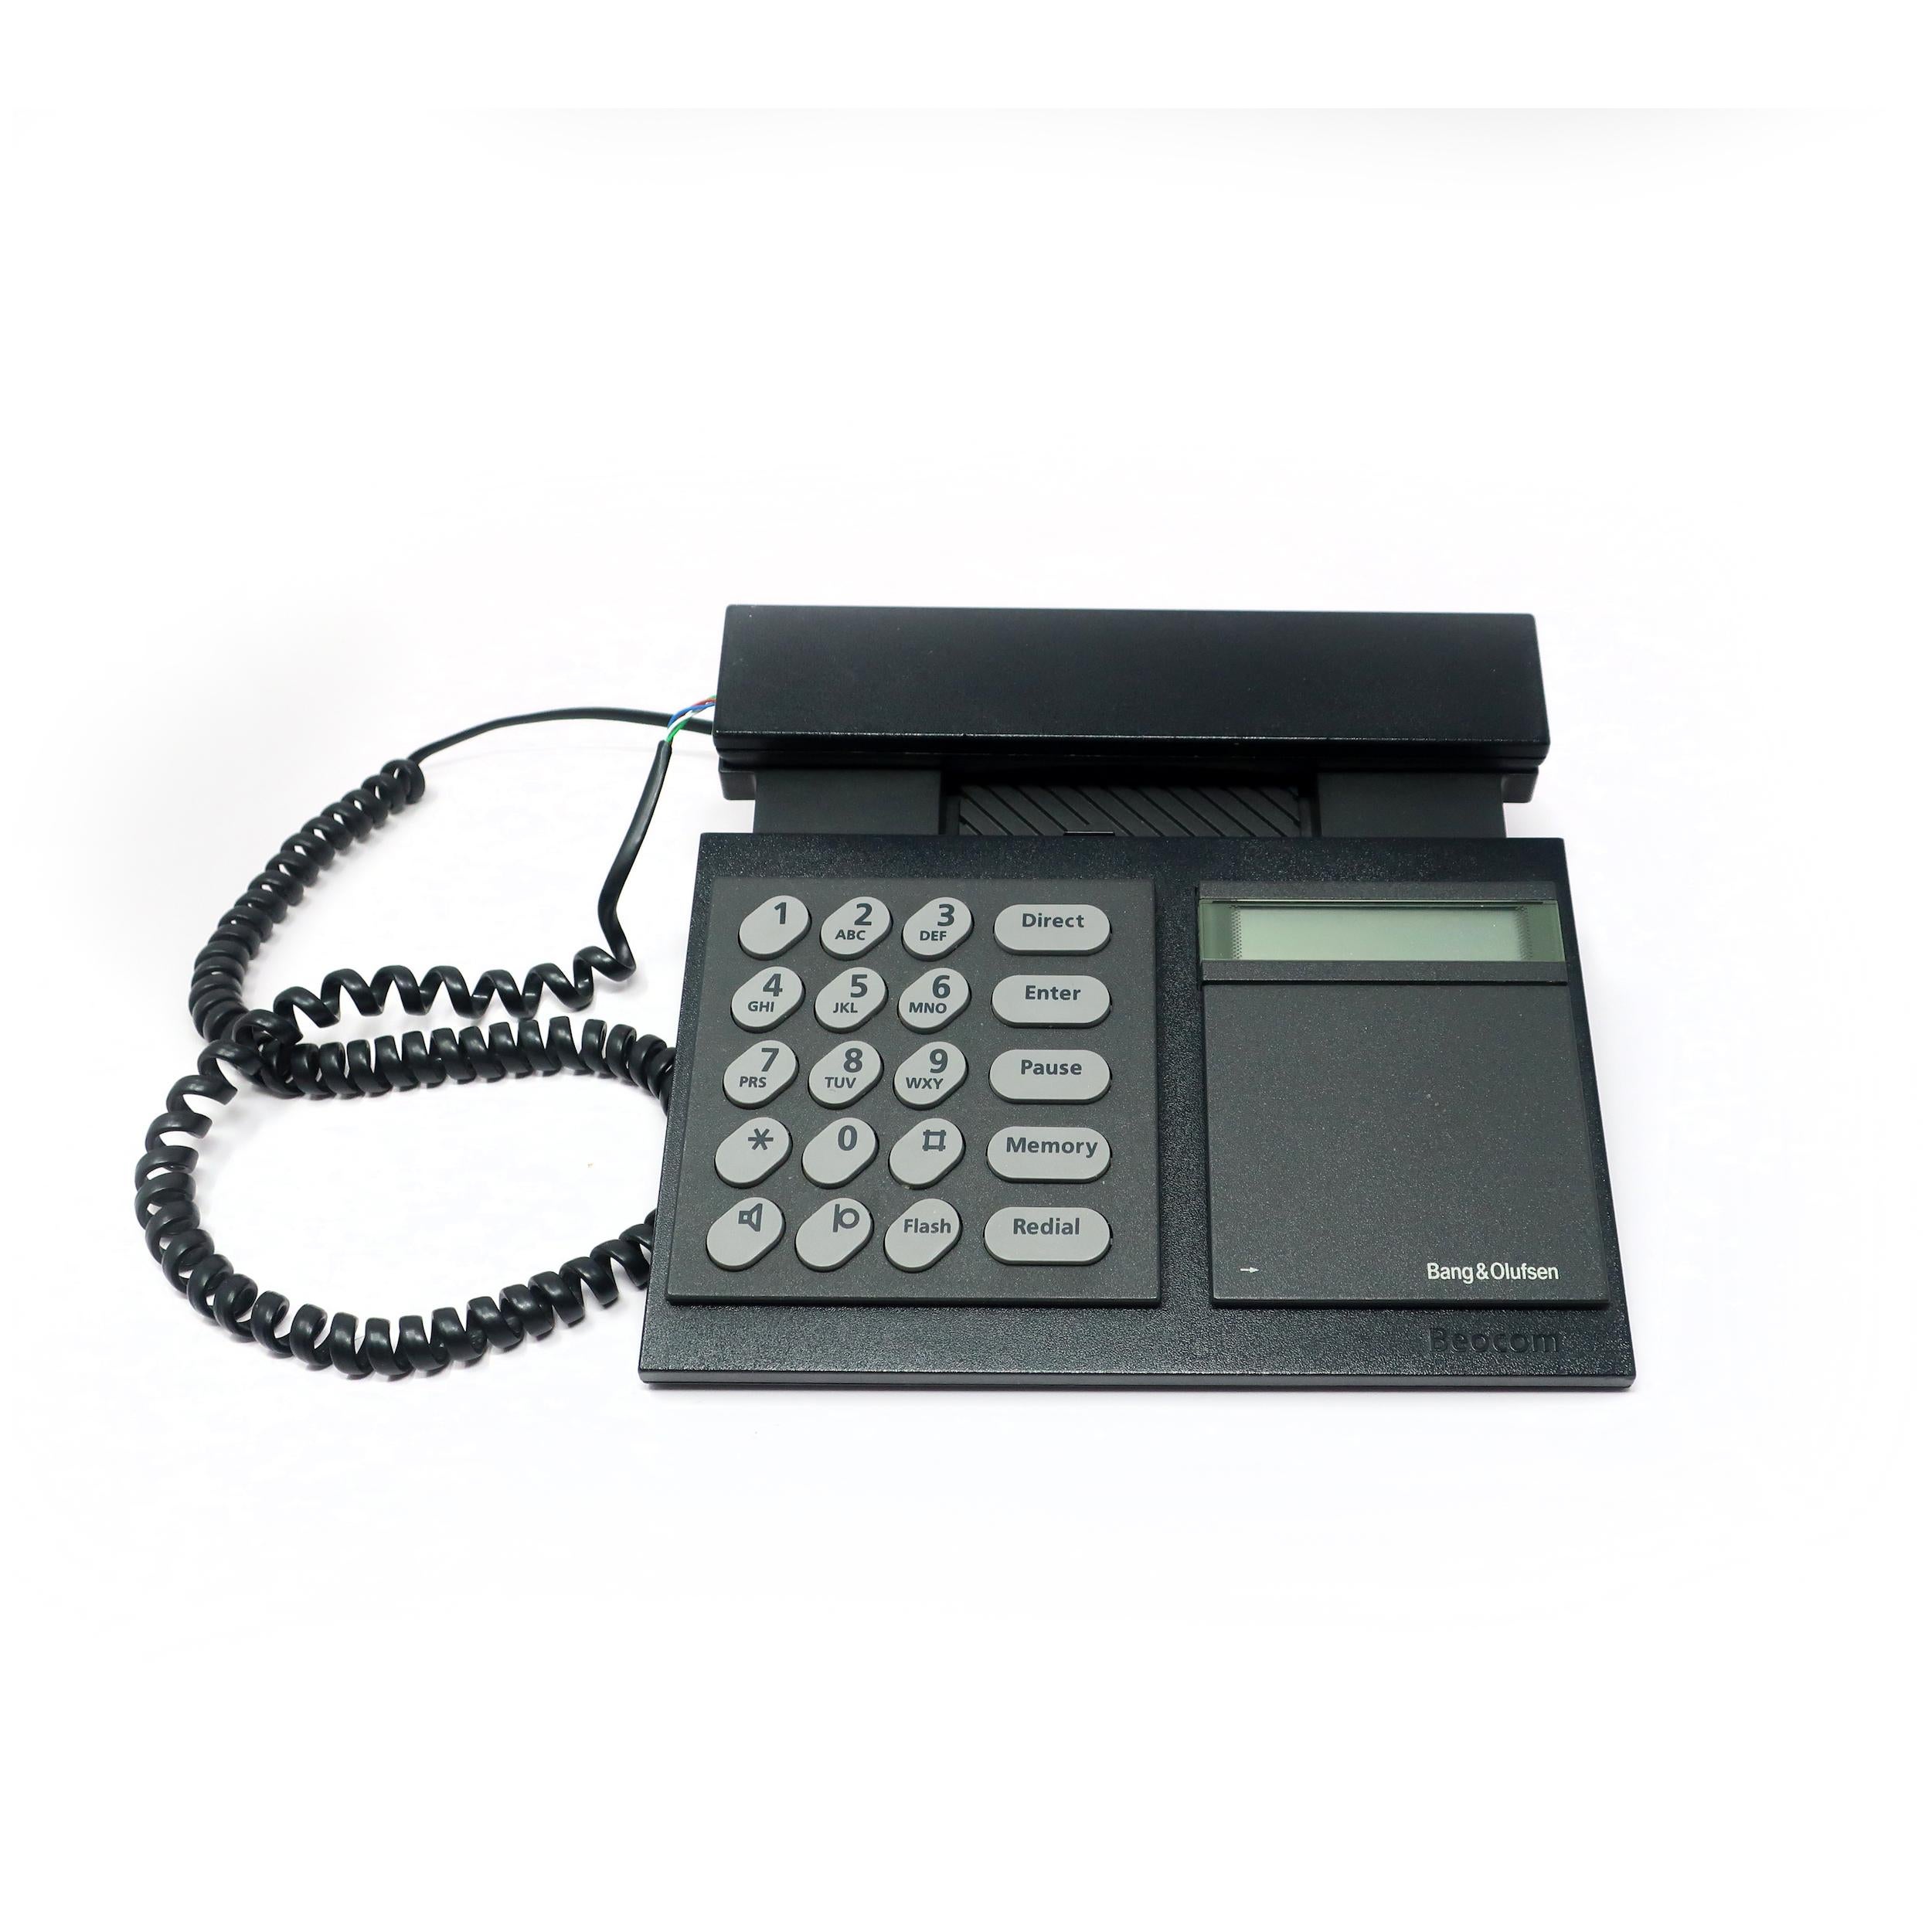 Conçu en 1986 par Lone et Gideon Lowy, le téléphone Beocom 2000 de Bang & Olufsen est le summum du design danois et la quintessence de la haute technologie et du design des années 1980. Il est composé d'un combiné et d'une base noirs avec des